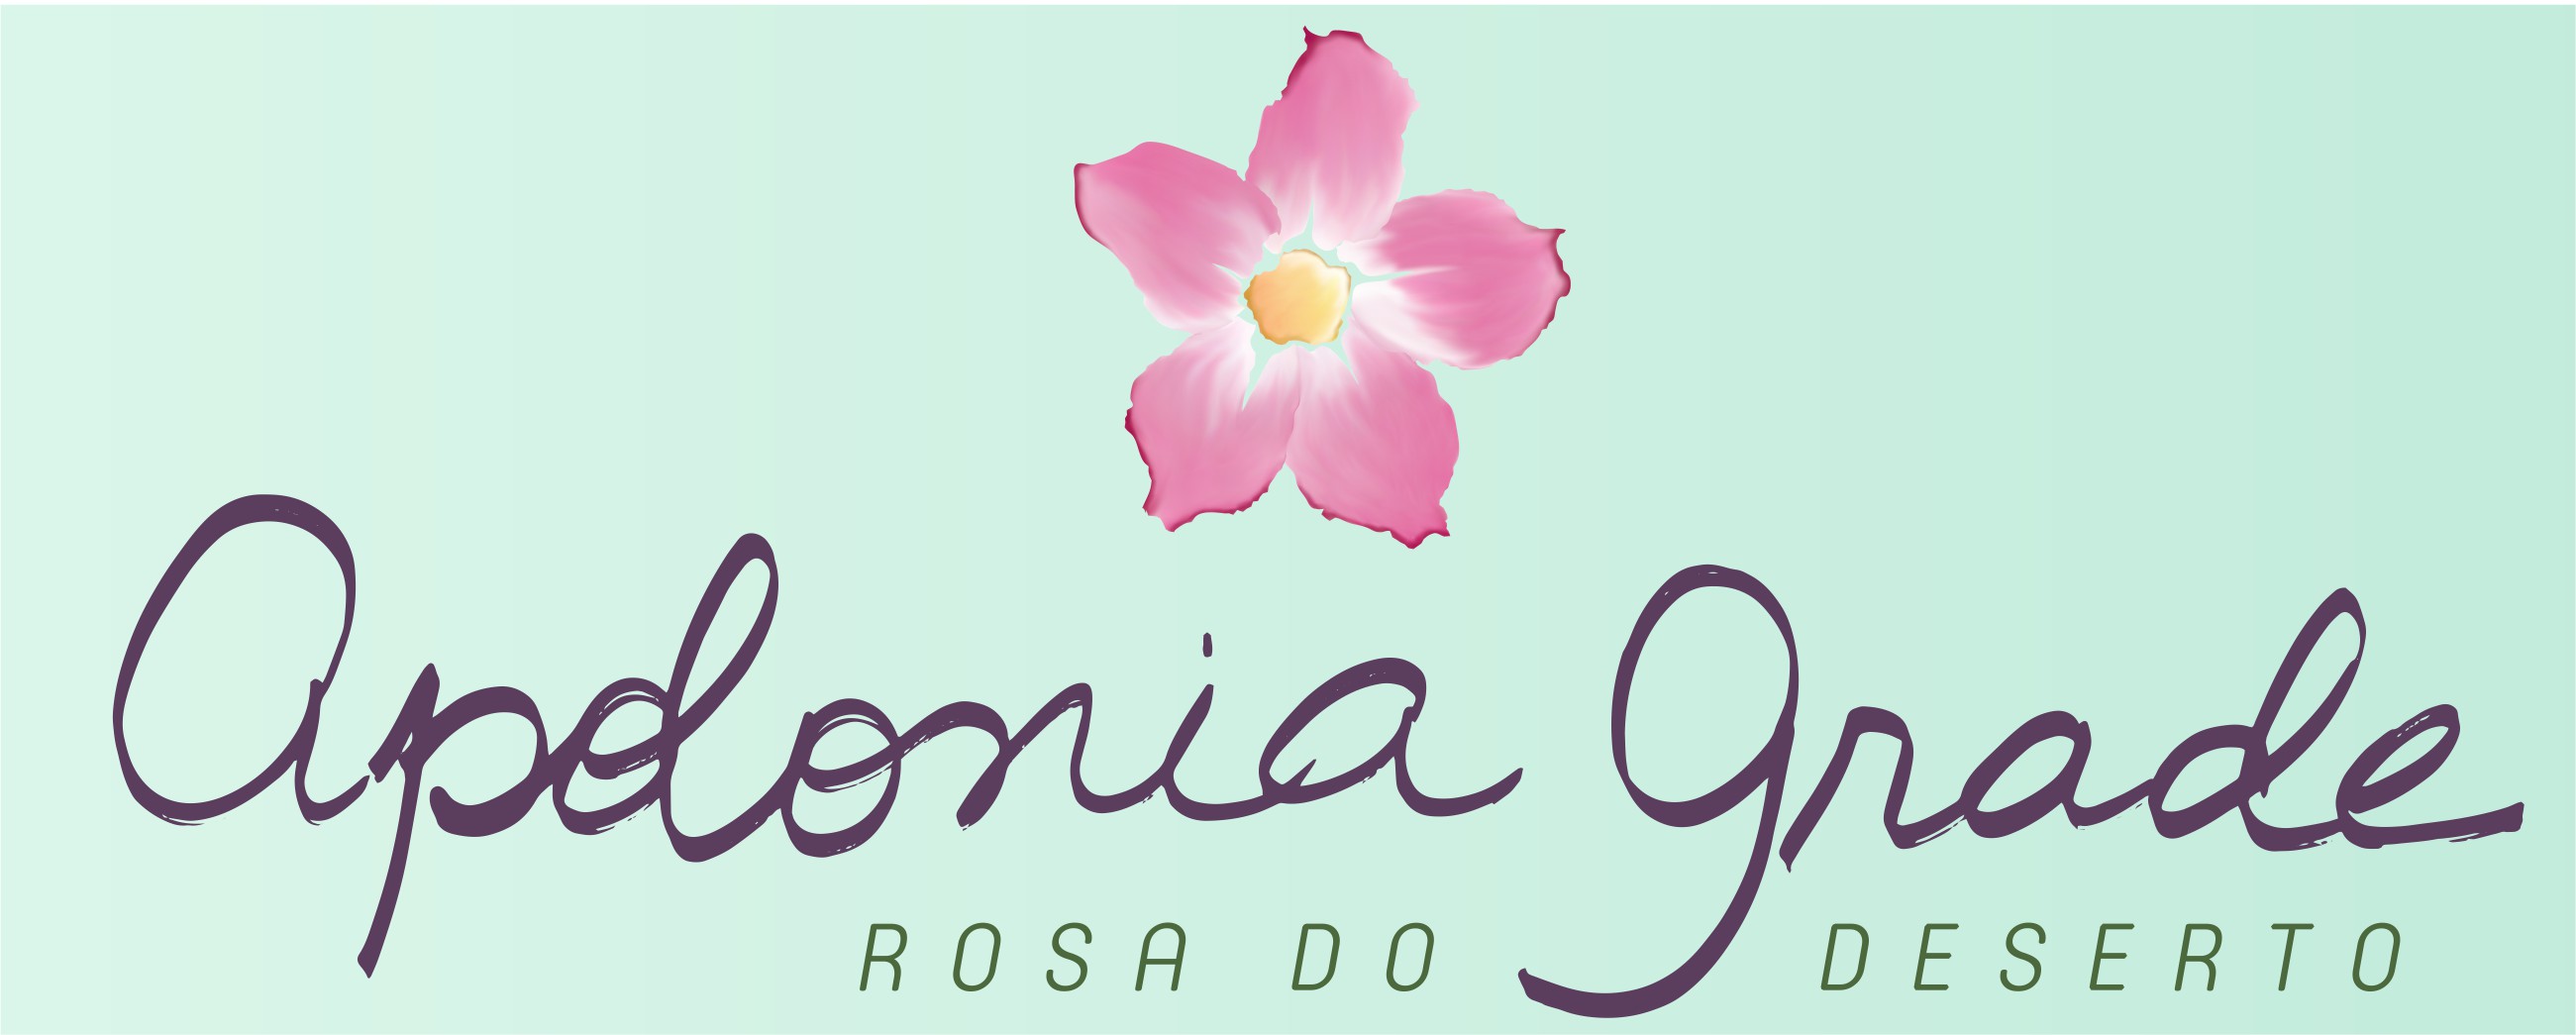 Apolonia Grade | Rosa do Deserto